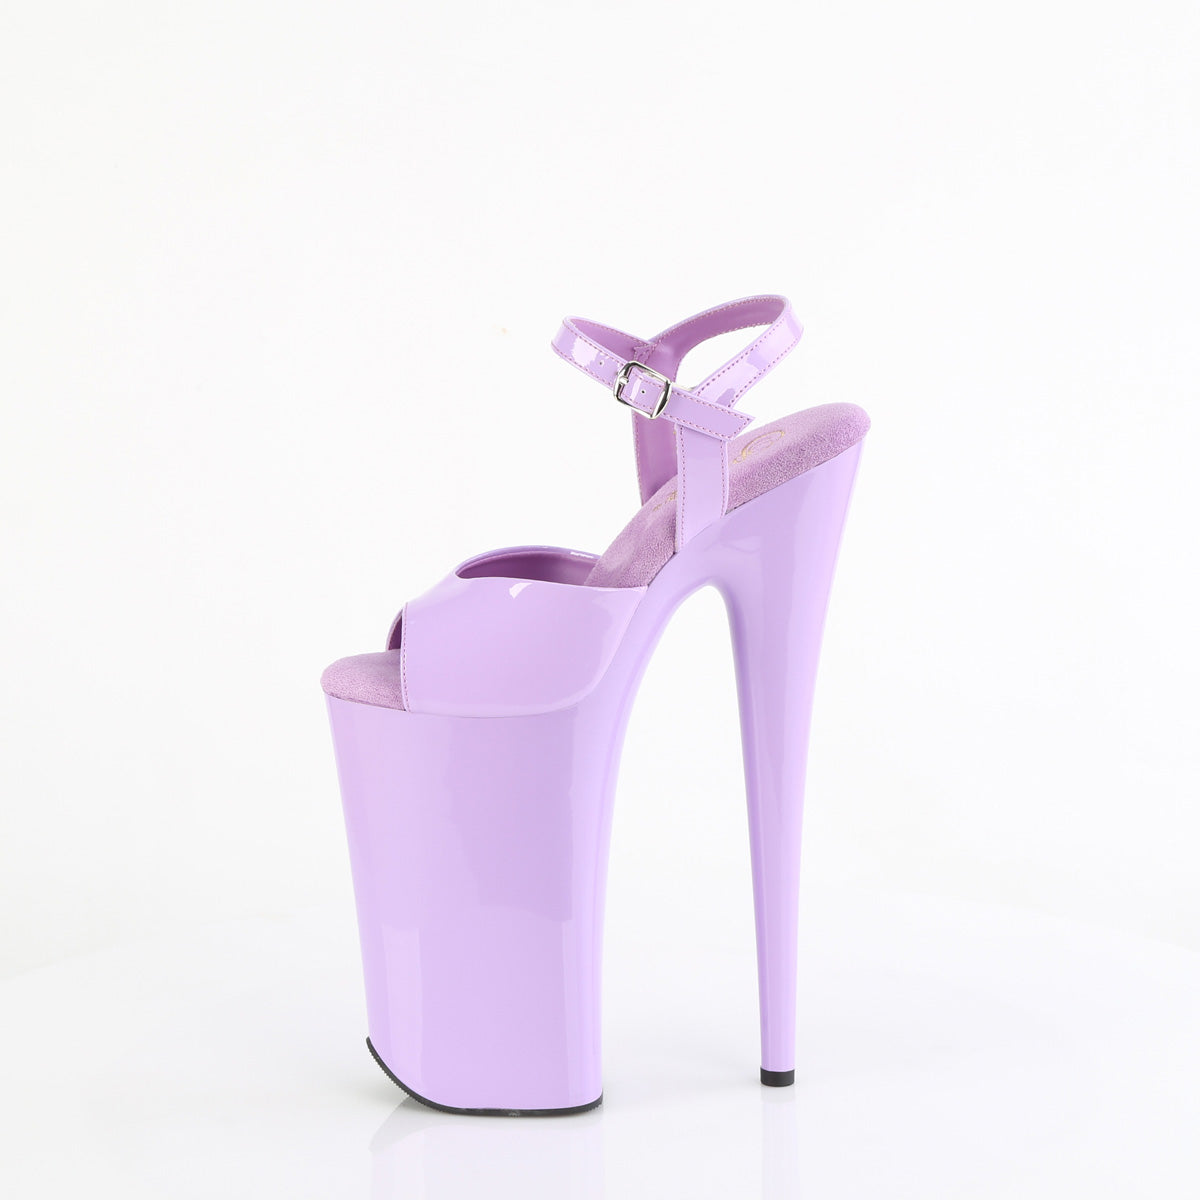 BEYOND-009 Pleaser Lavender Patent/Lavender Platform Shoes [Extreme High Heels]